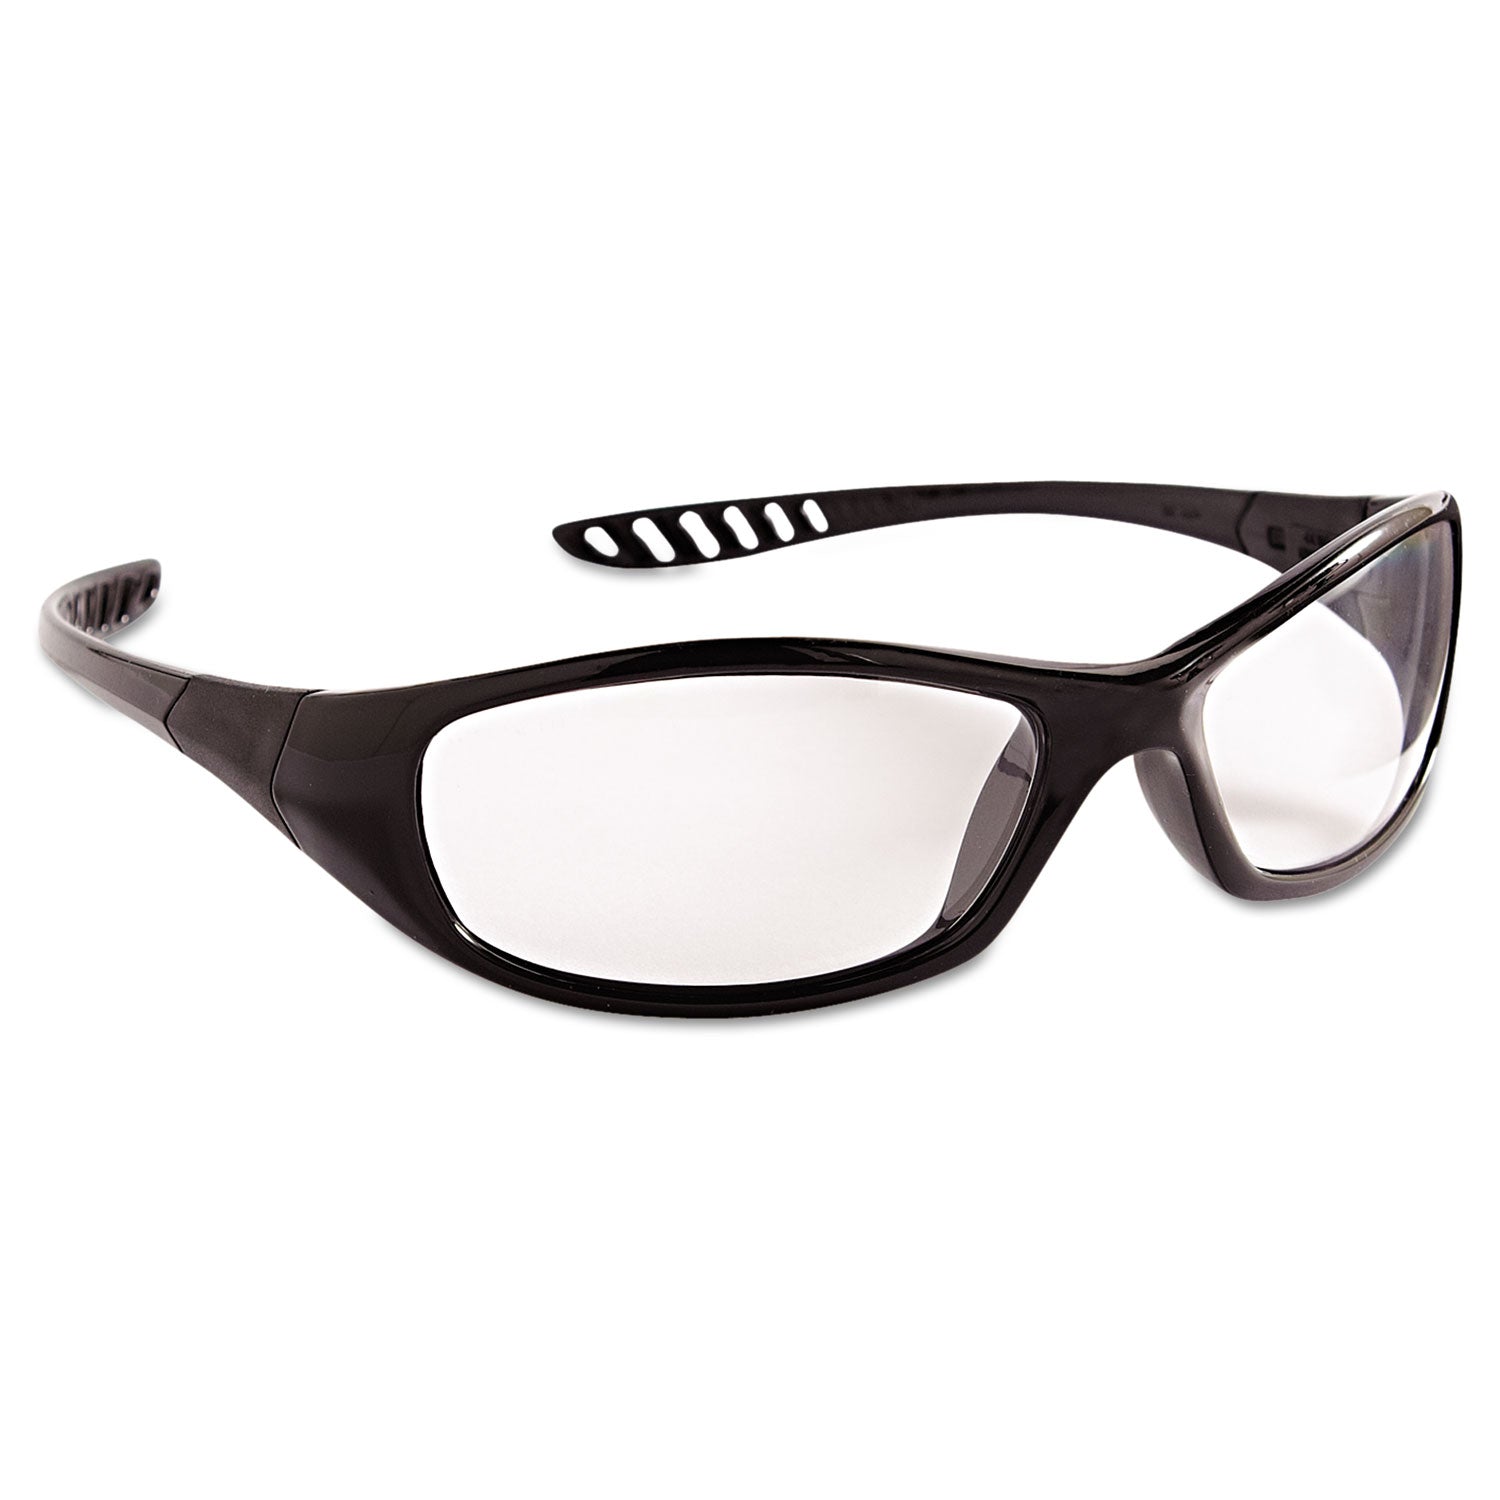 v40-hellraiser-safety-glasses-black-frame-clear-anti-fog-lens_kcc28615 - 1